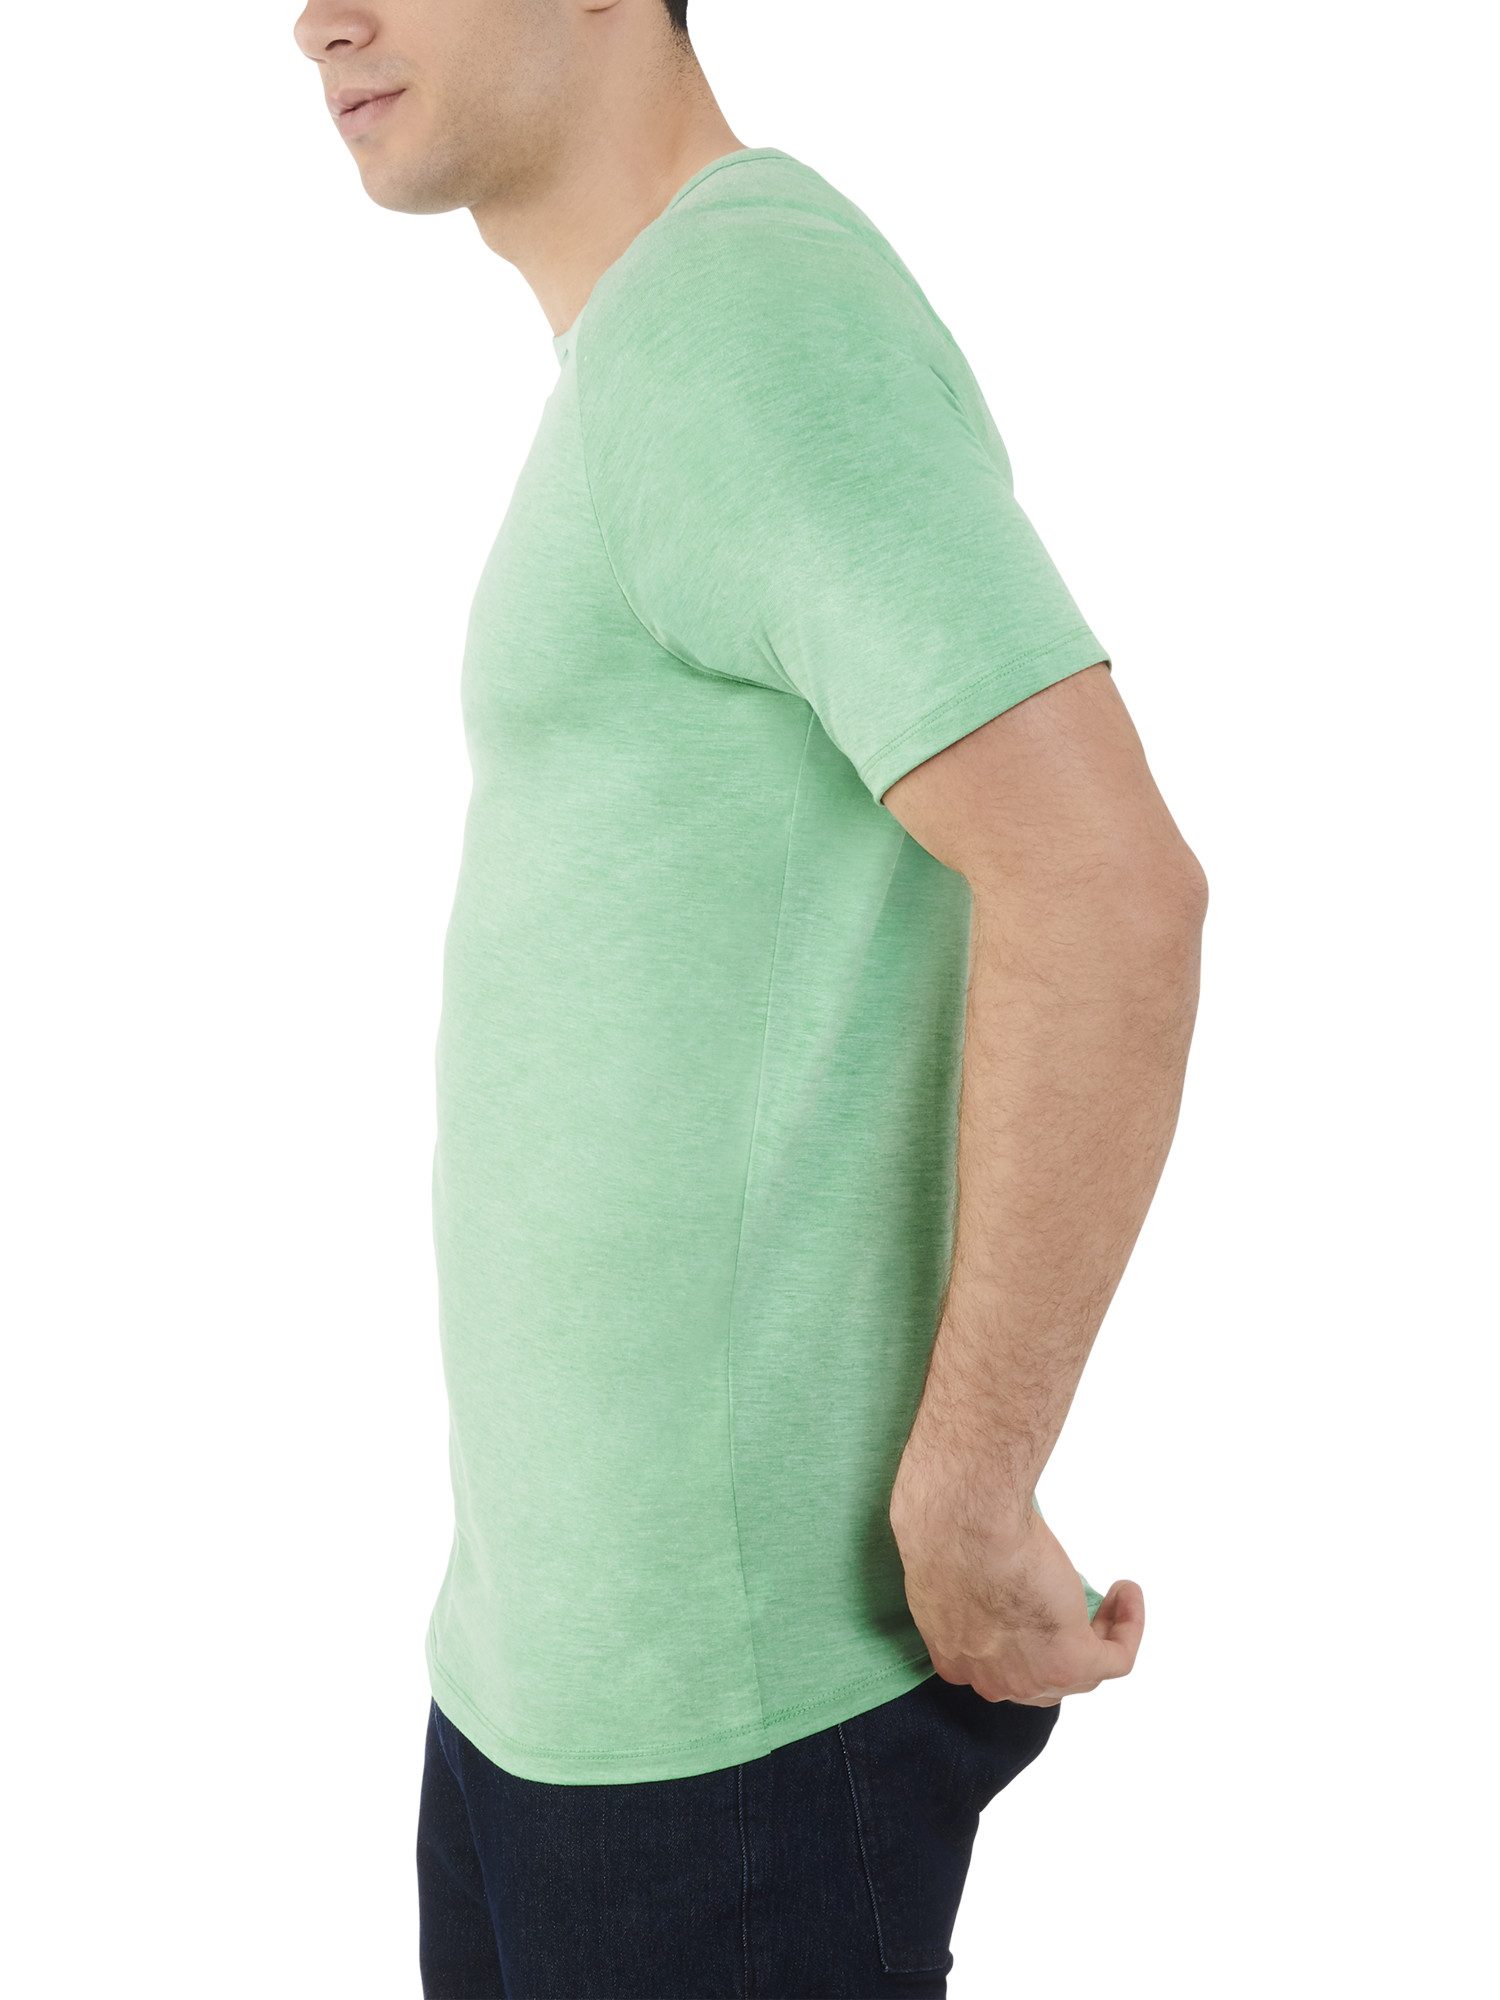 Fruit of the Loom Men's Everlight Short Sleeve Raglan T-Shirt - 2 Pack - image 4 of 6